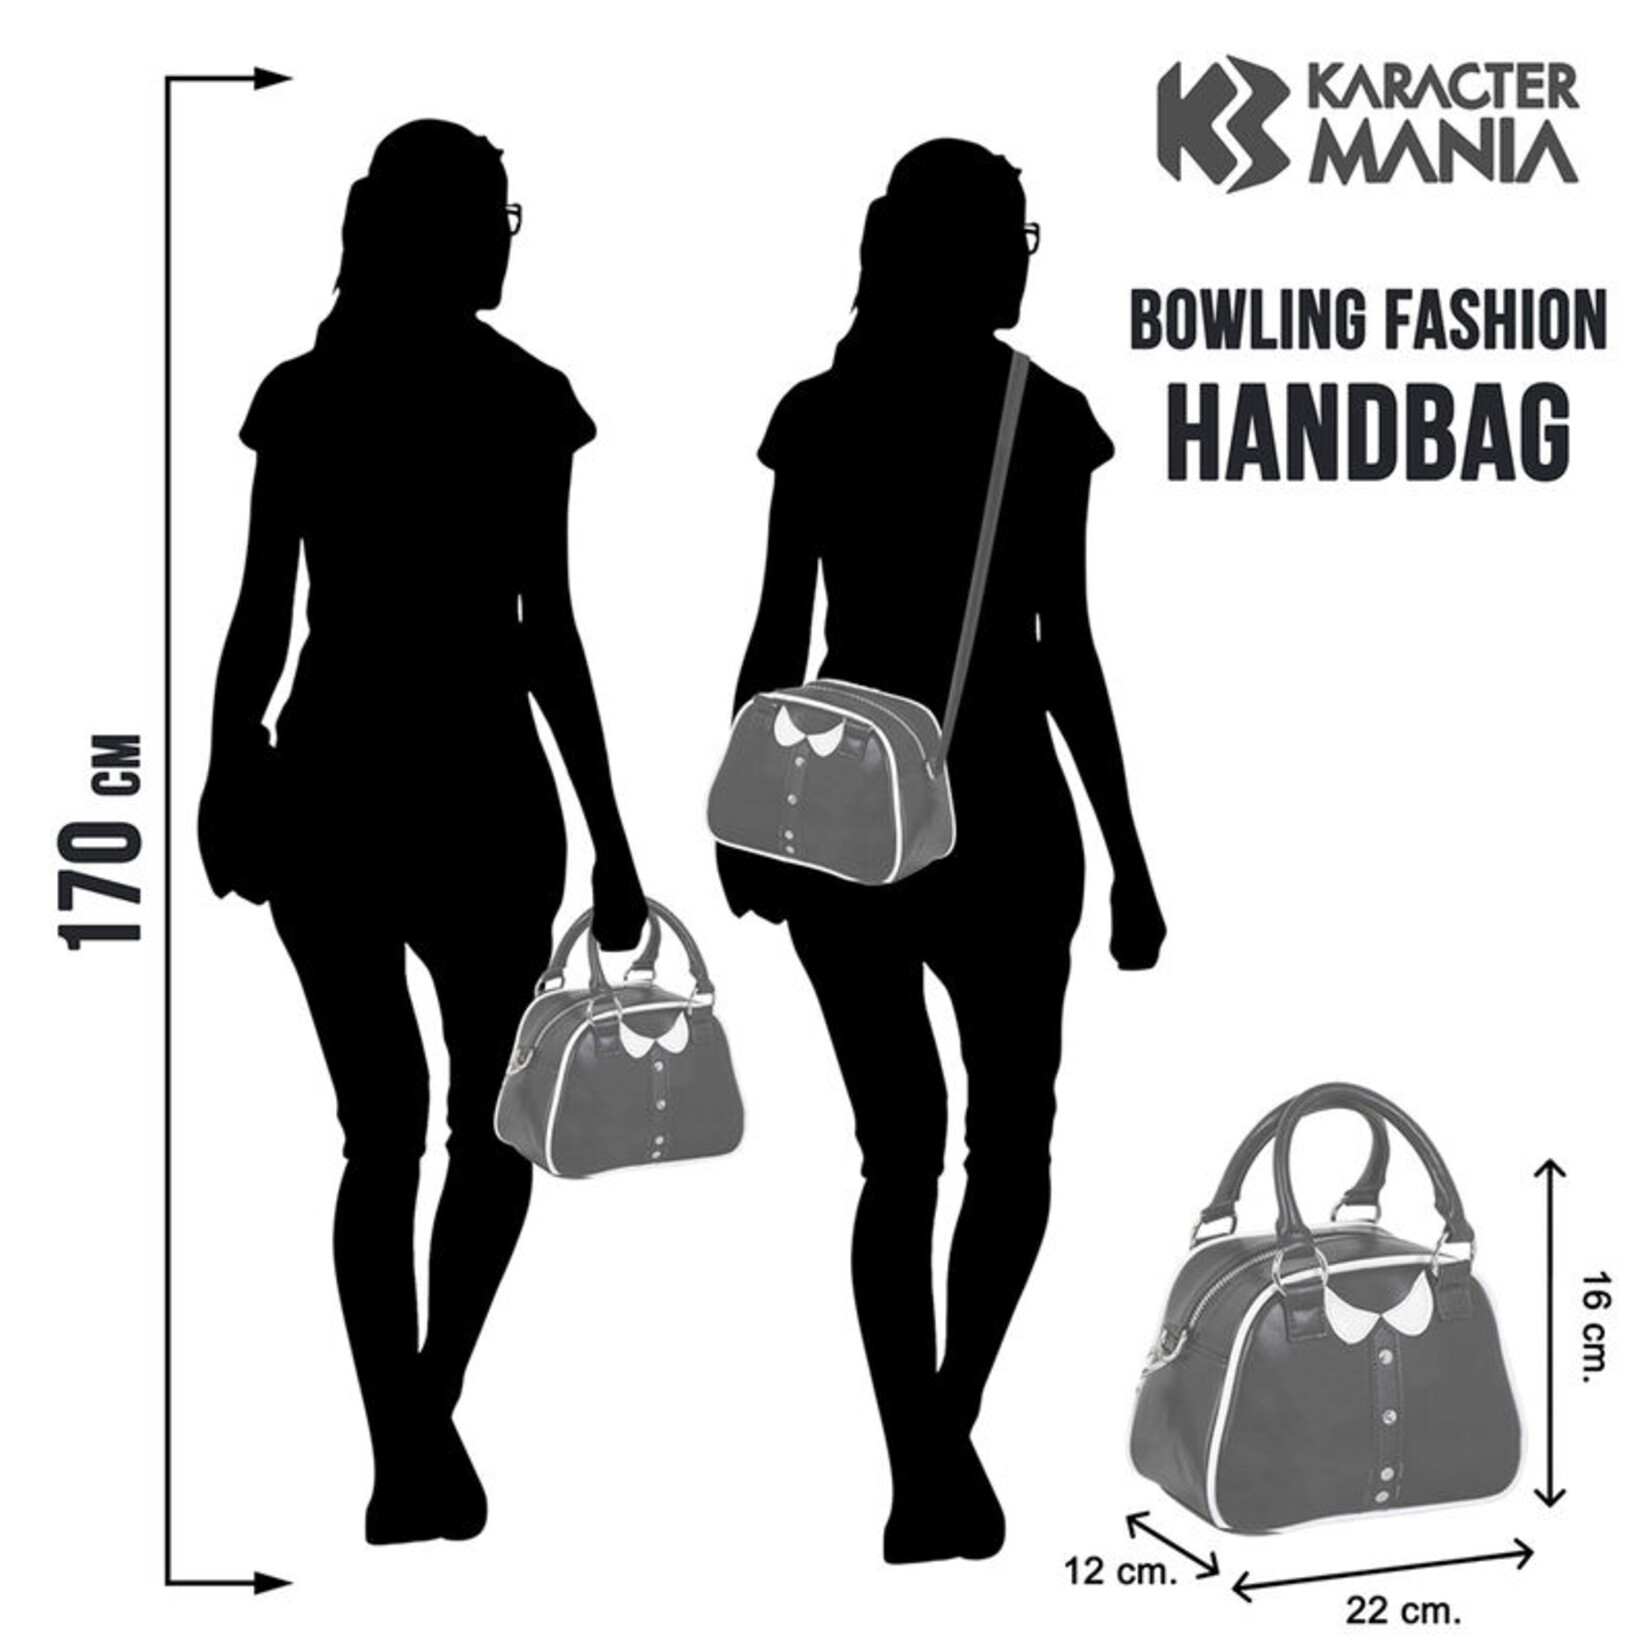 Karacter Mania Karacter Mania Wednesday Varsity Bowling Bag 22 cm